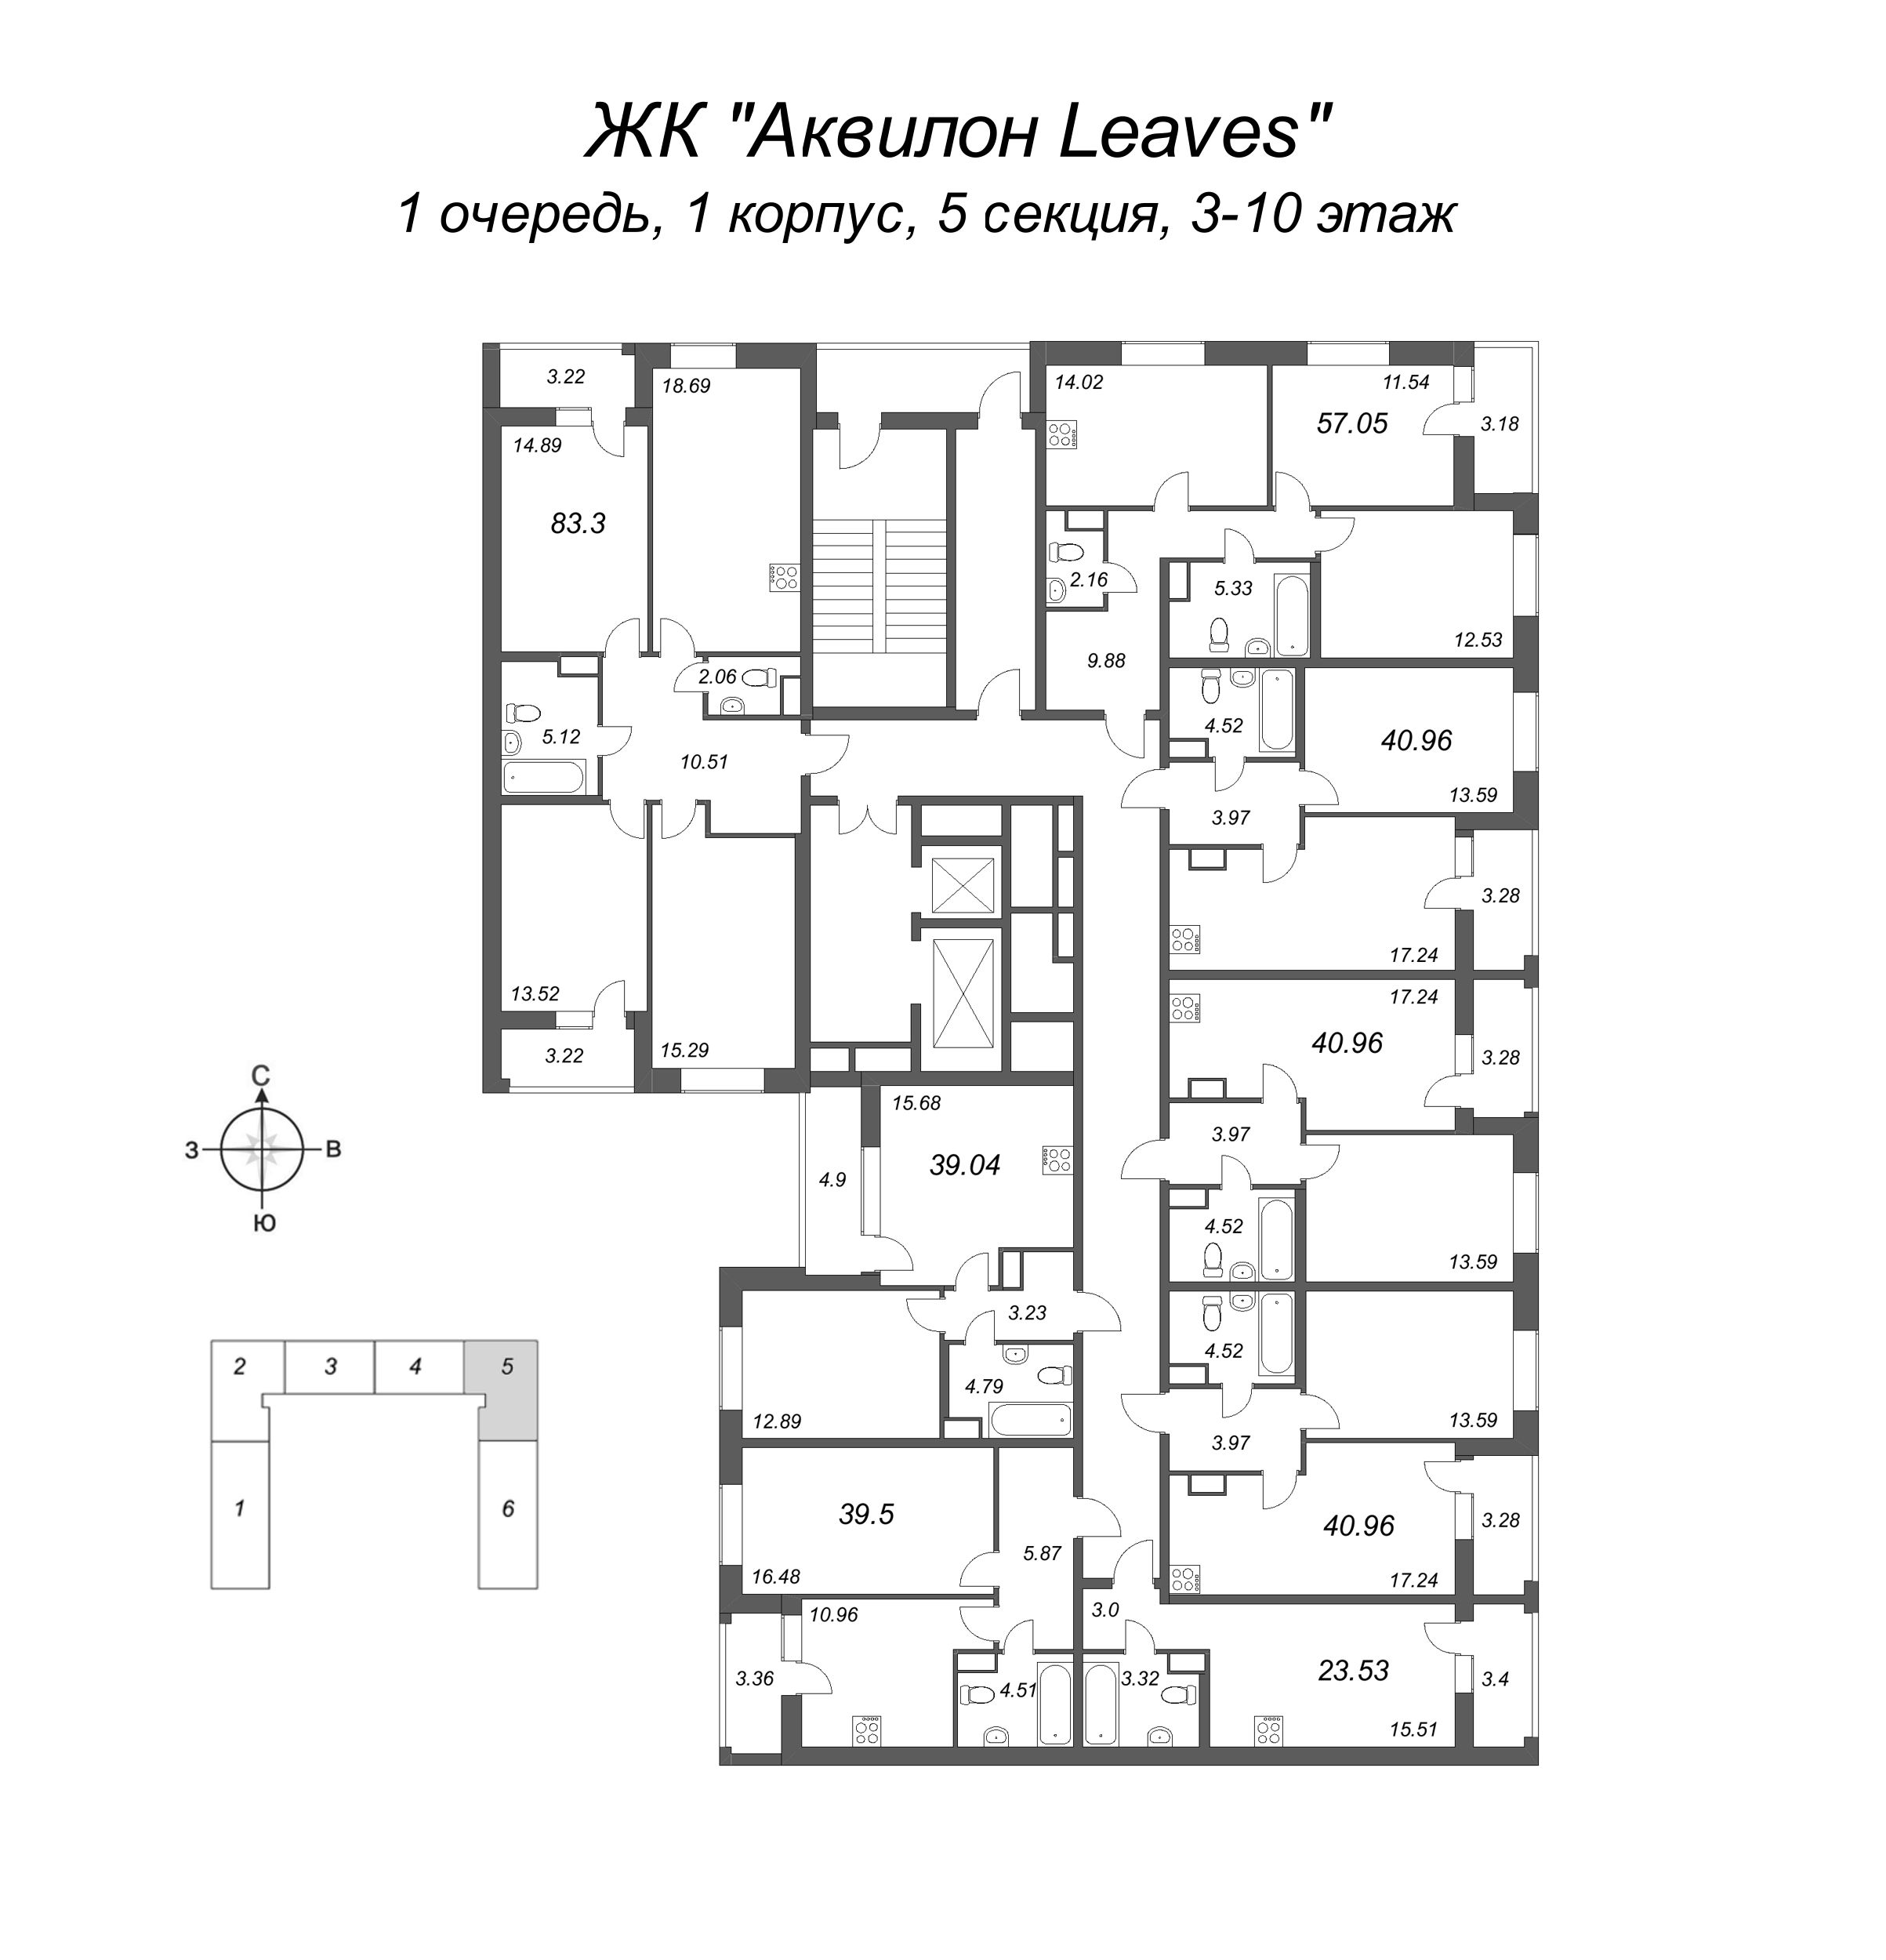 2-комнатная (Евро) квартира, 39.04 м² в ЖК "Аквилон Leaves" - планировка этажа